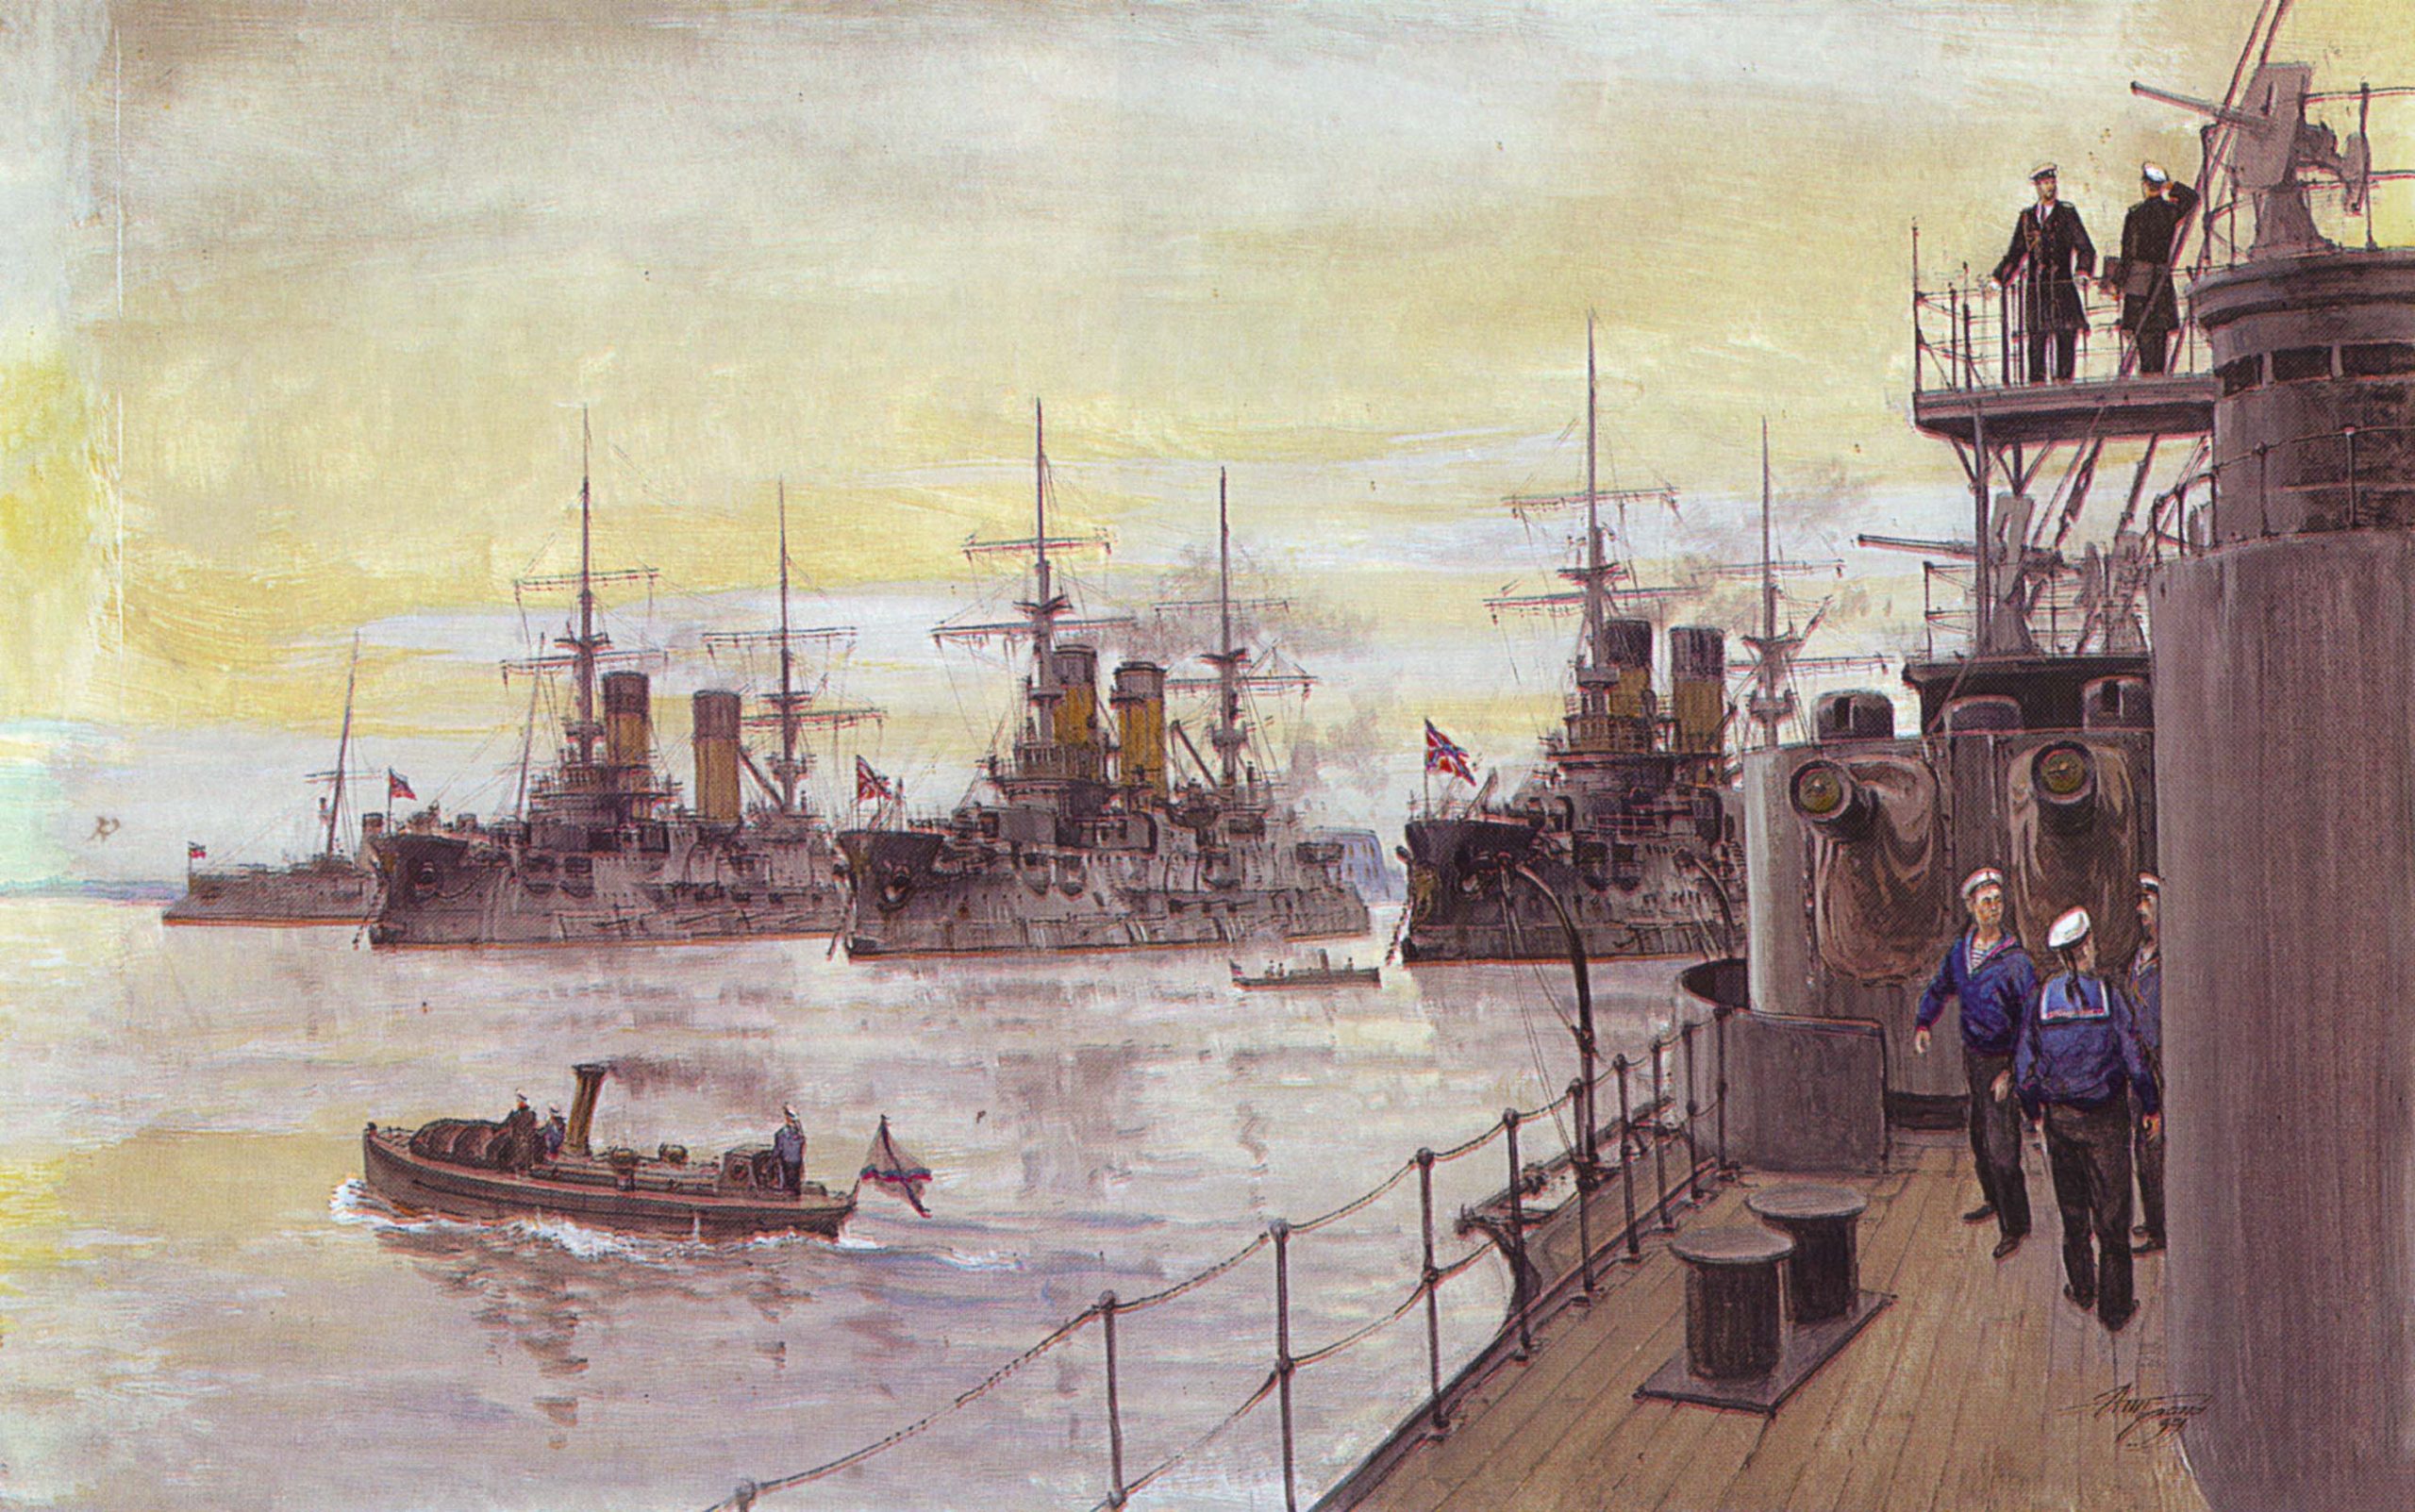 Японская эскадра 1904. Цусима 2 эскадра. Цусима 1904.